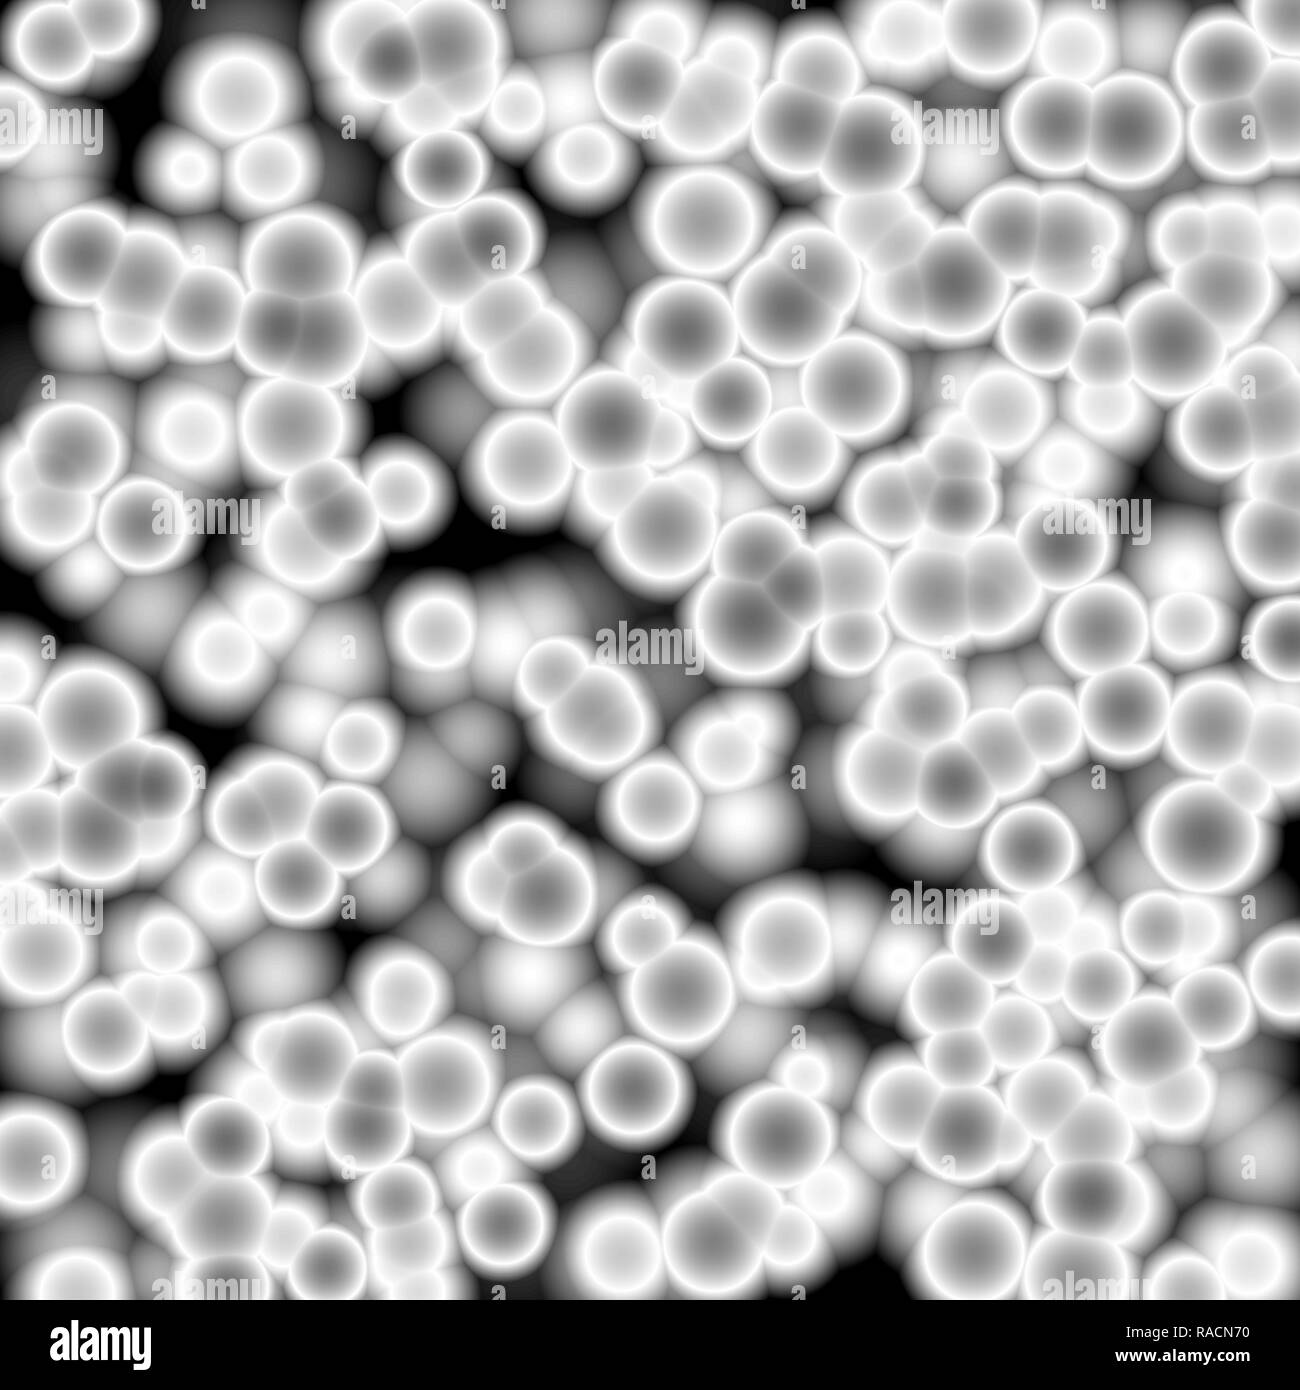 Weiß Bakterien unter dem Mikroskop, abstrakten Hintergrund Stockfotografie  - Alamy